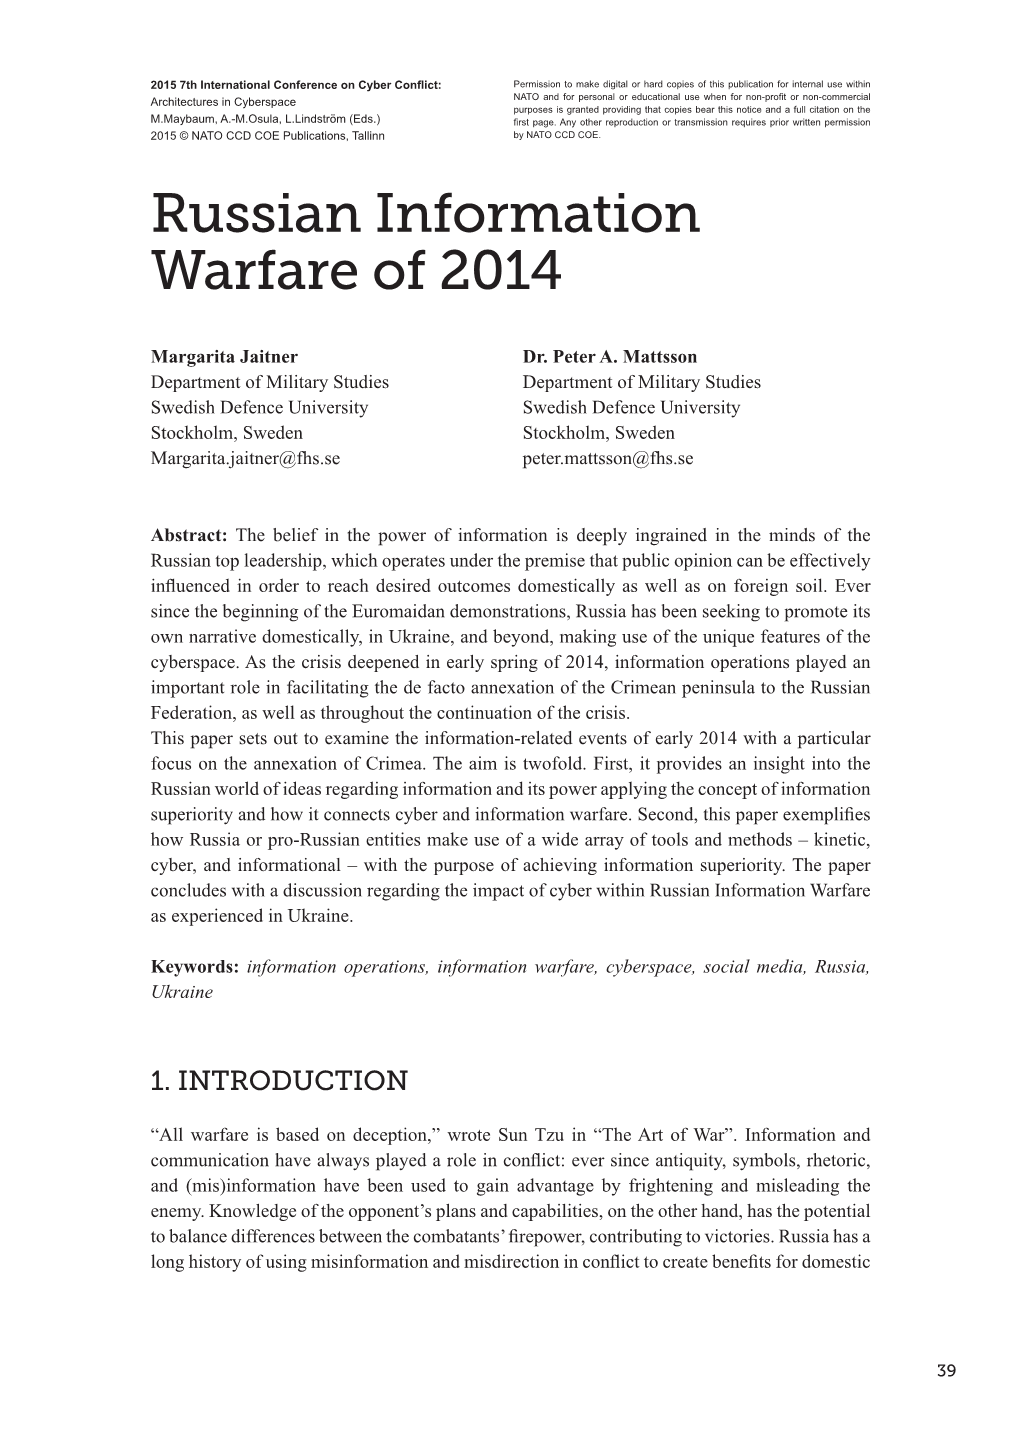 Russian Information Warfare of 2014